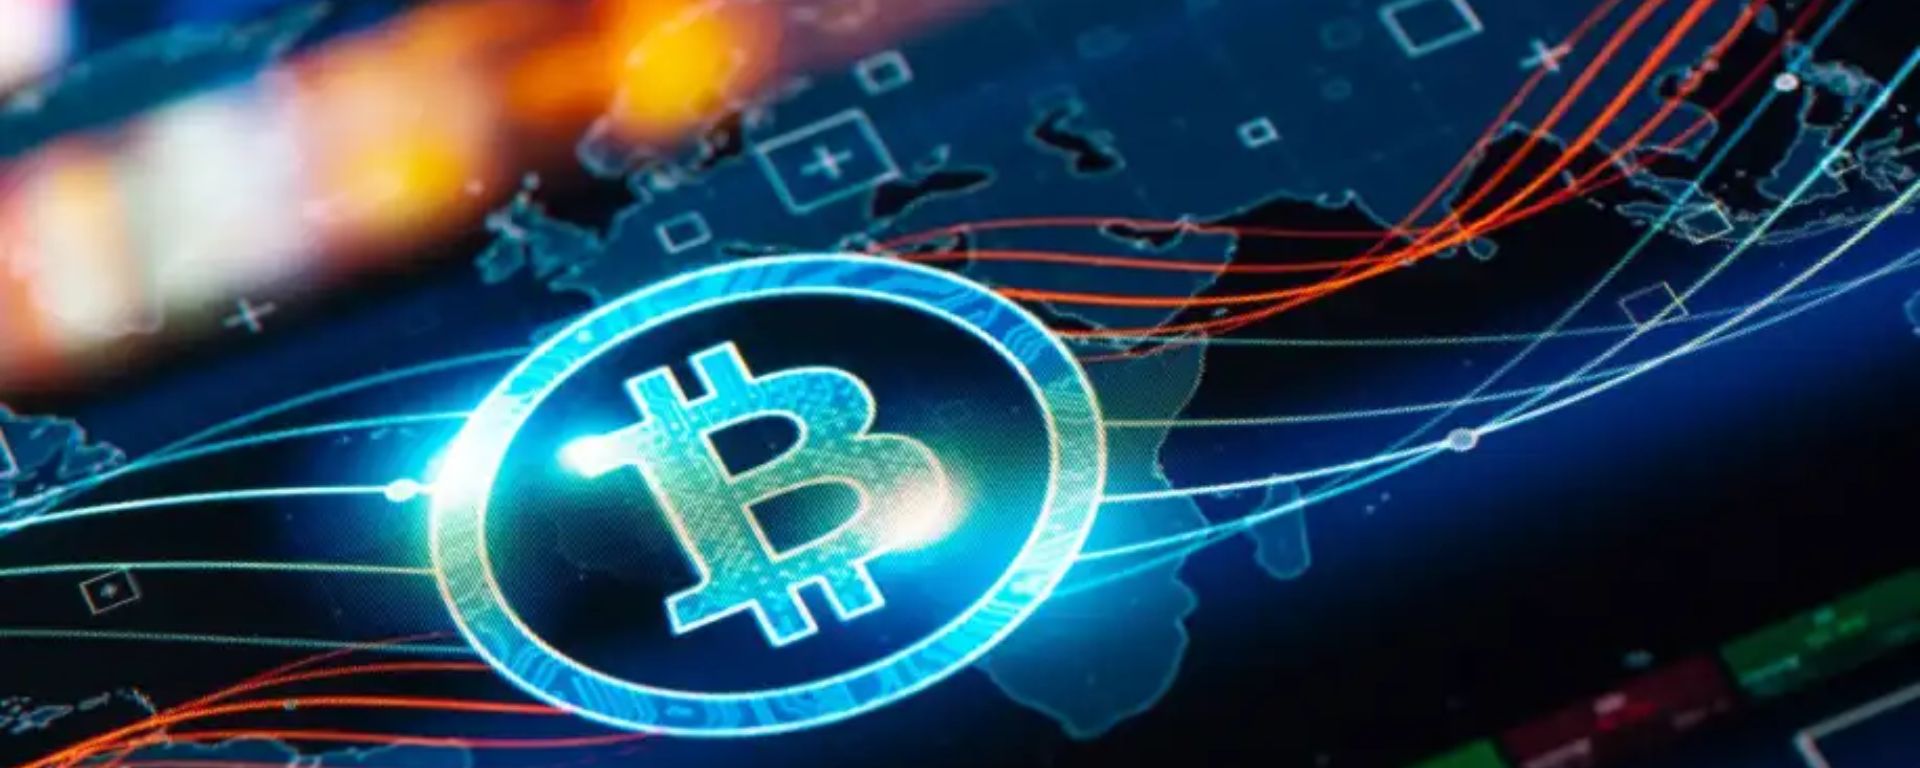 Bitcoin juntamente com o mercado cripto caem deixando o mercado no vermelho - Webitcoin